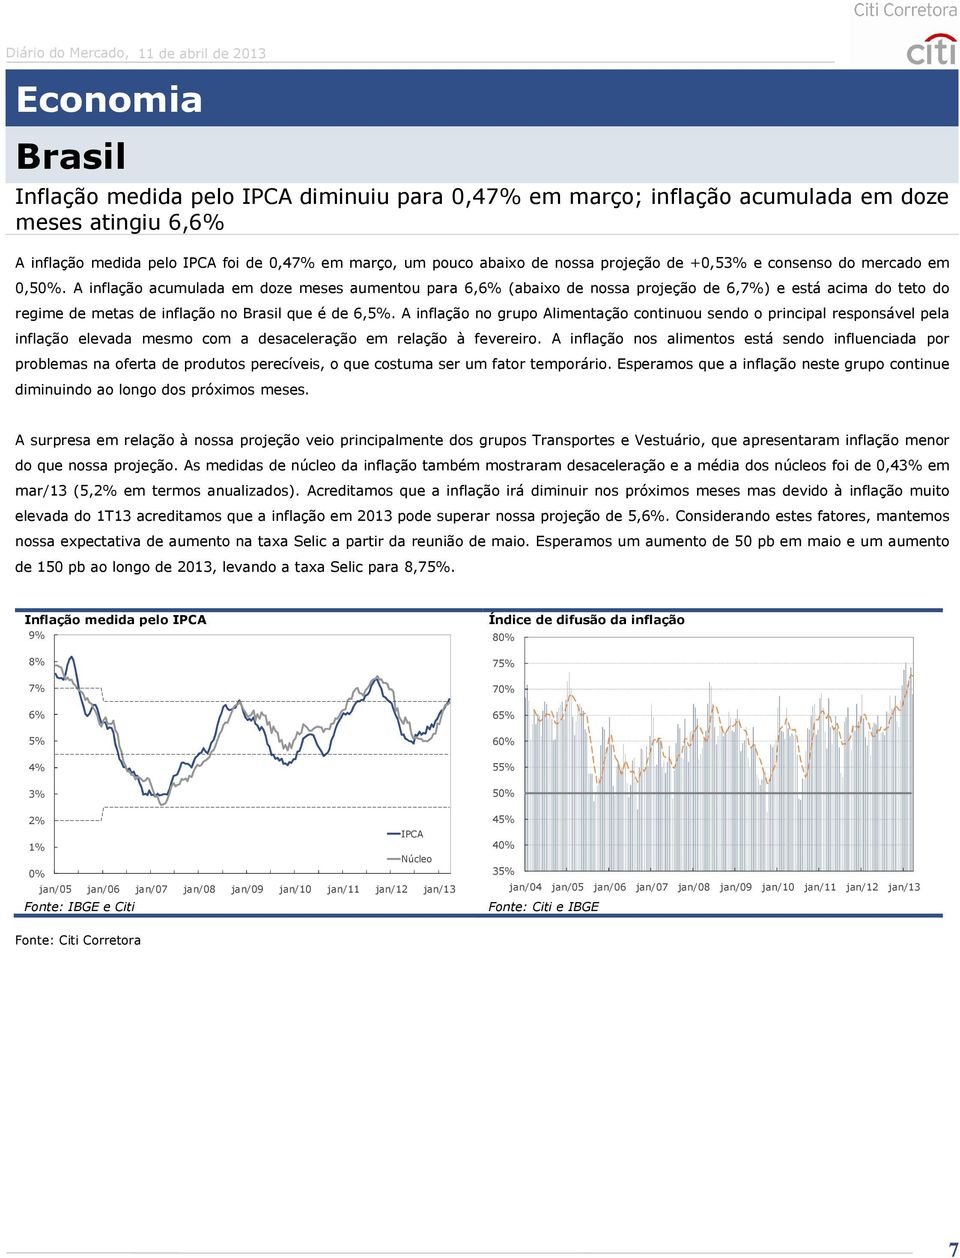 A inflação acumulada em doze meses aumentou para 6,6% (abaixo de nossa projeção de 6,7%) e está acima do teto do regime de metas de inflação no Brasil que é de 6,5%.